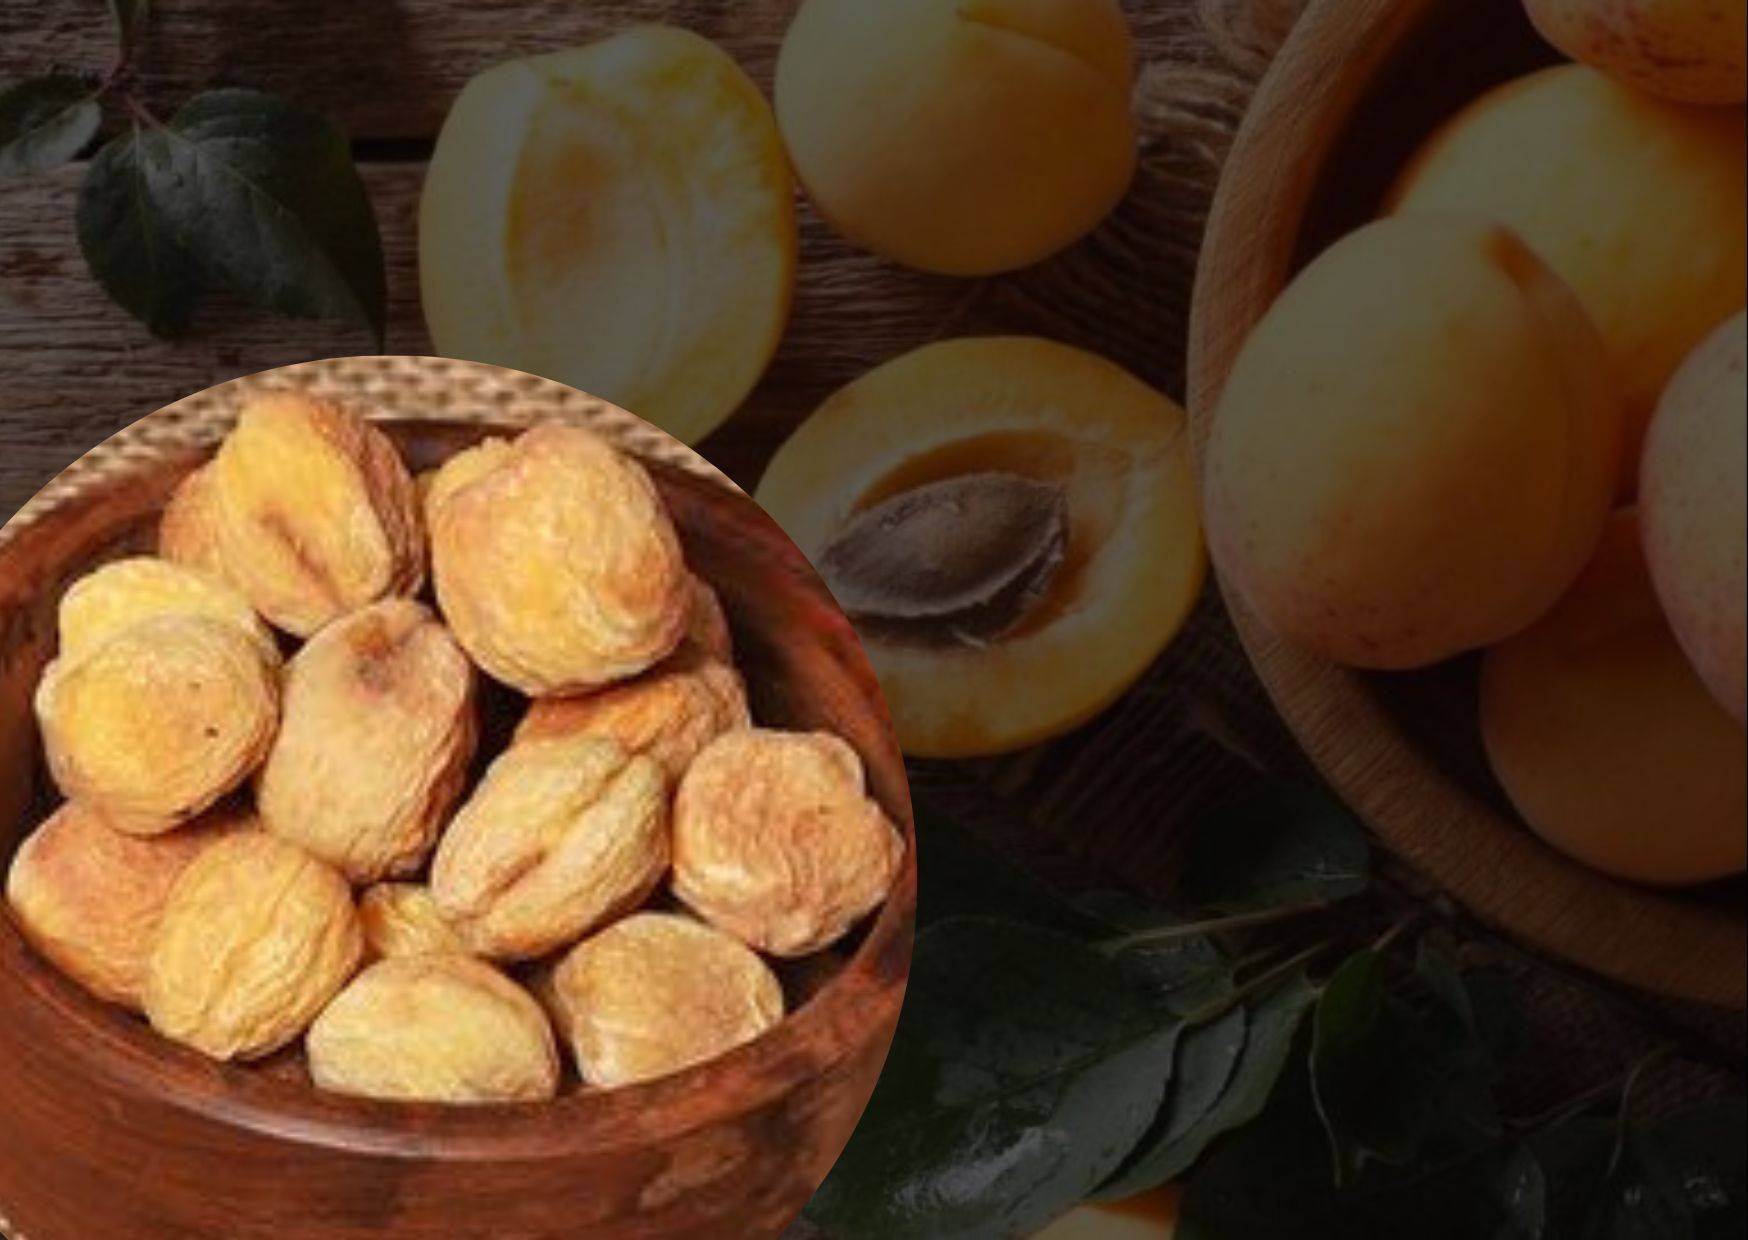 Ladakh apricots reach Middle East, Singapore, Vietnam & Mauritius